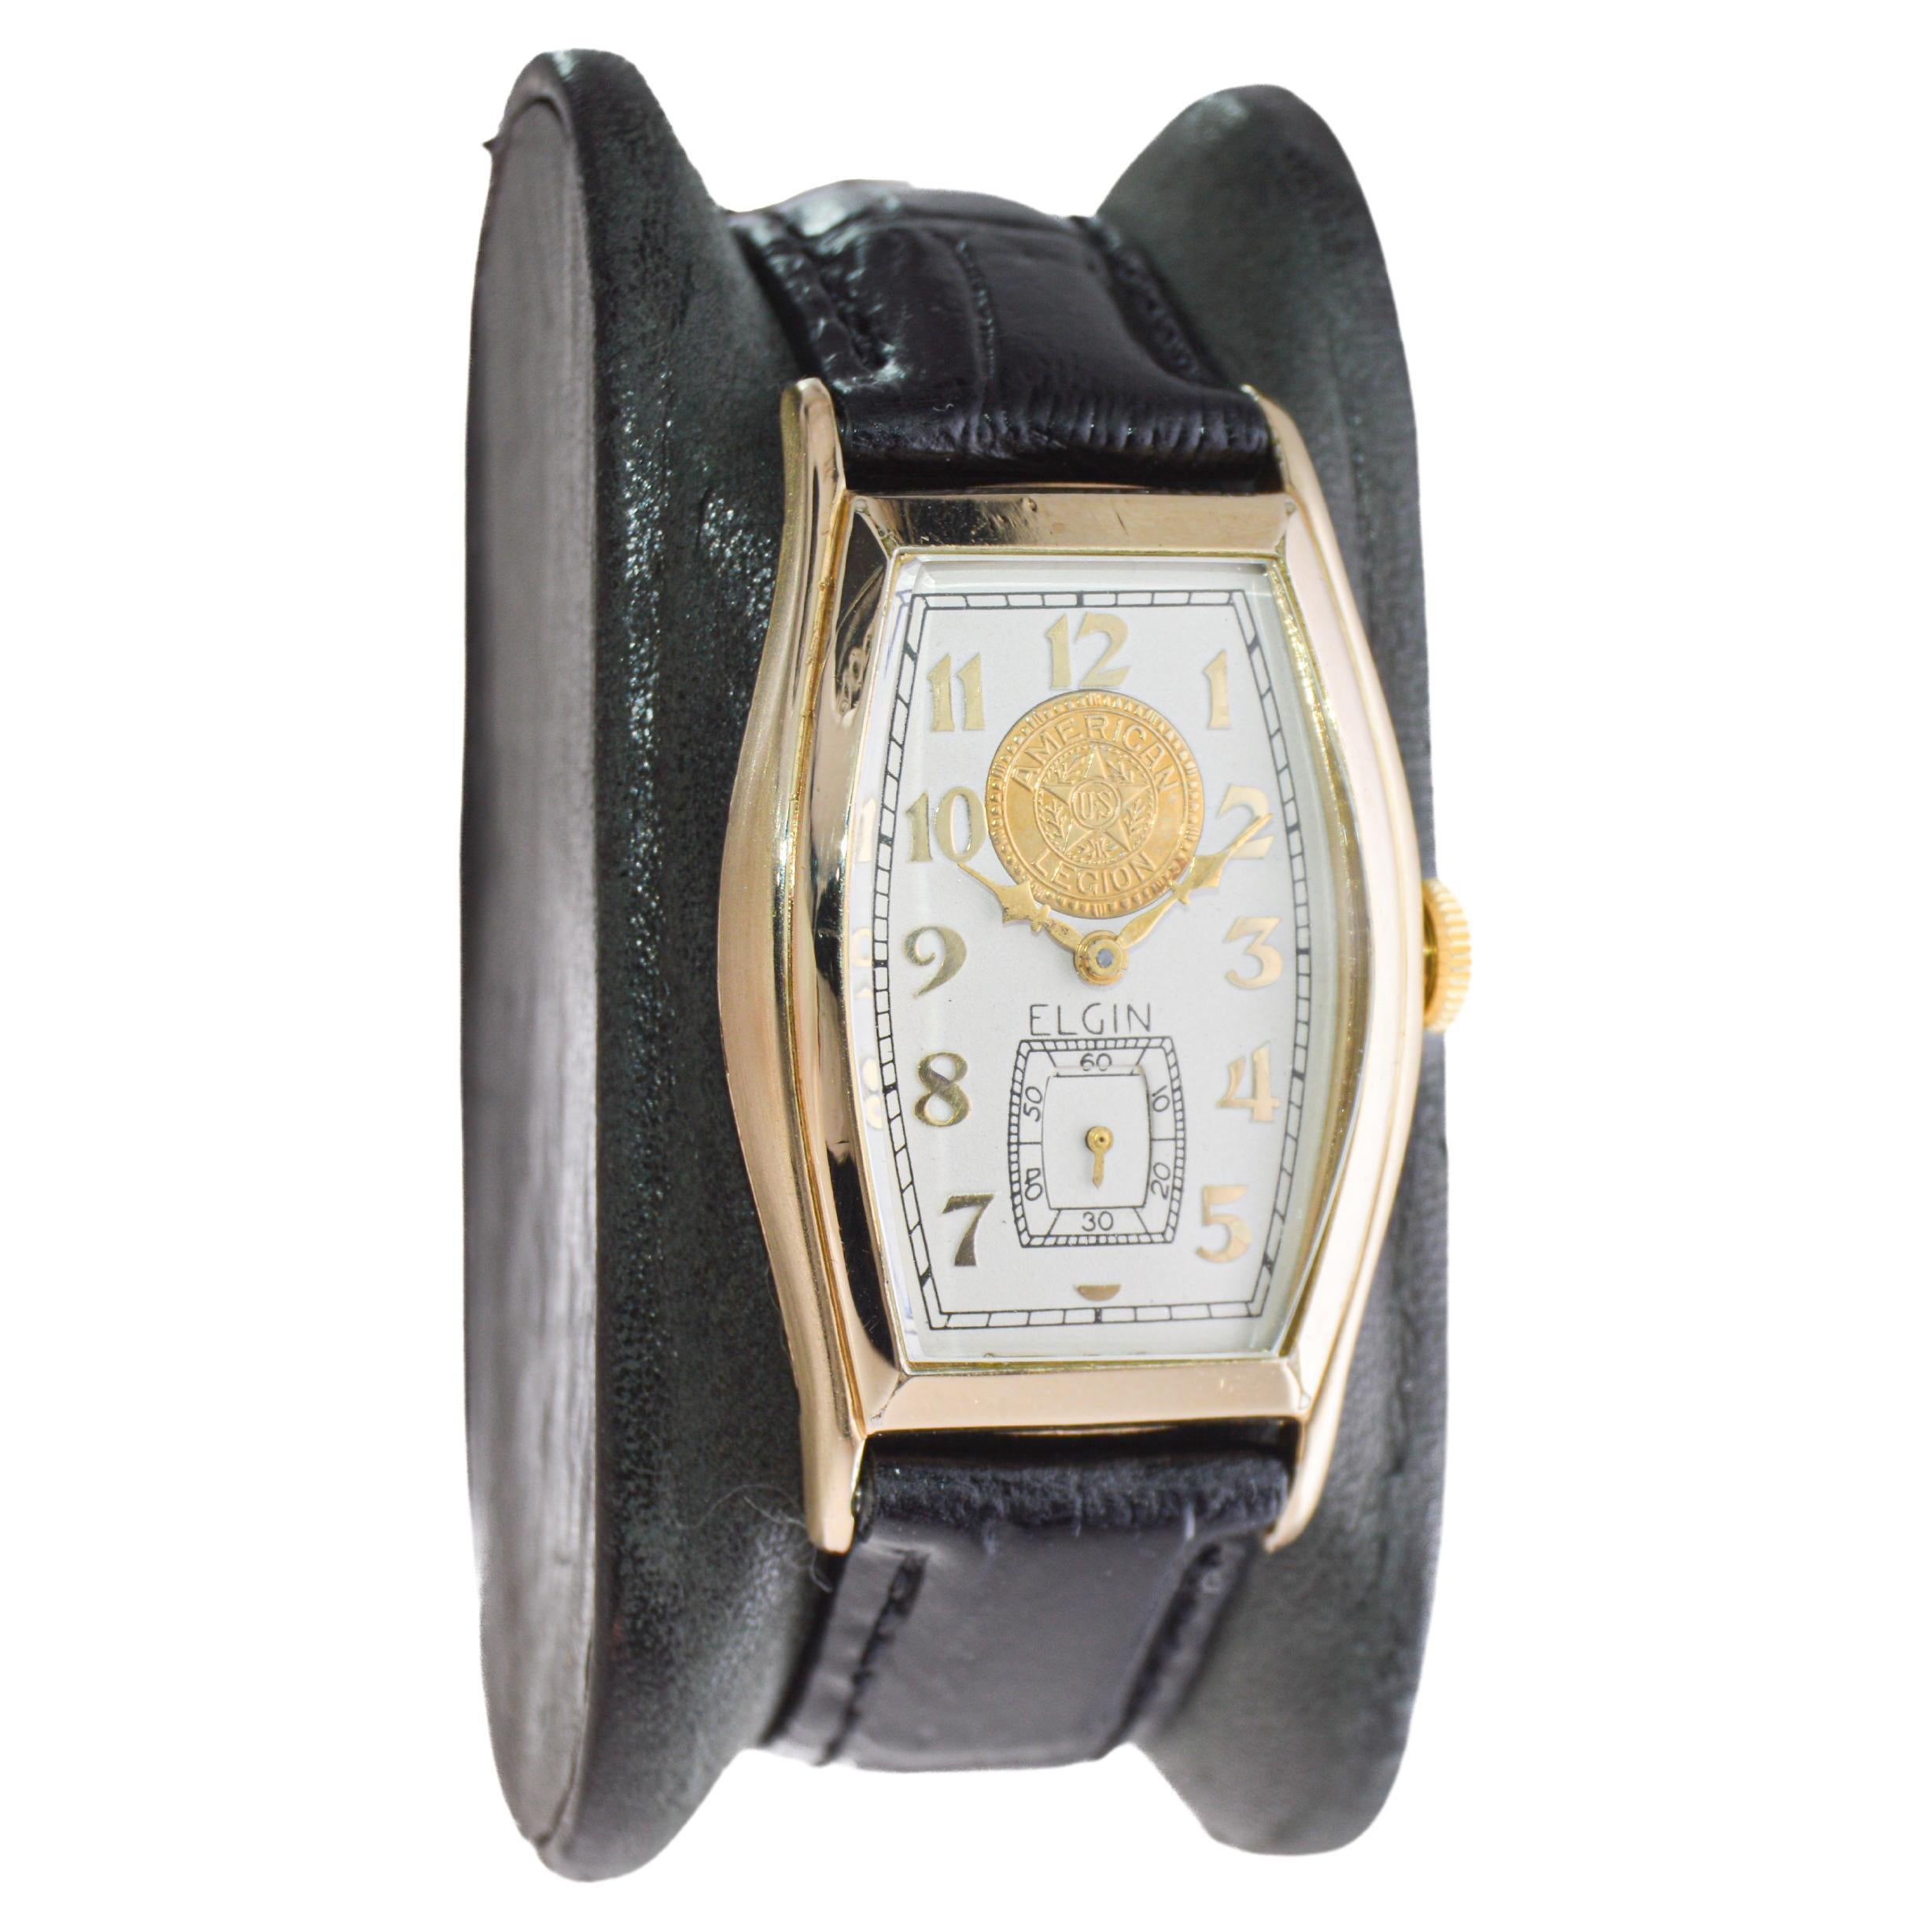 USINE / MAISON : Elgin Watch Company
STYLE / RÉFÉRENCE : Art Déco / Forme Tortue
METAL / MATERIAL : Rempli d'or jaune
CIRCA / ANNÉE : 1939
DIMENSIONS / TAILLE : Longueur 25mm X Diamètre 42mm
MOUVEMENT / CALIBRE : Remontage manuel / 15 Jewell /